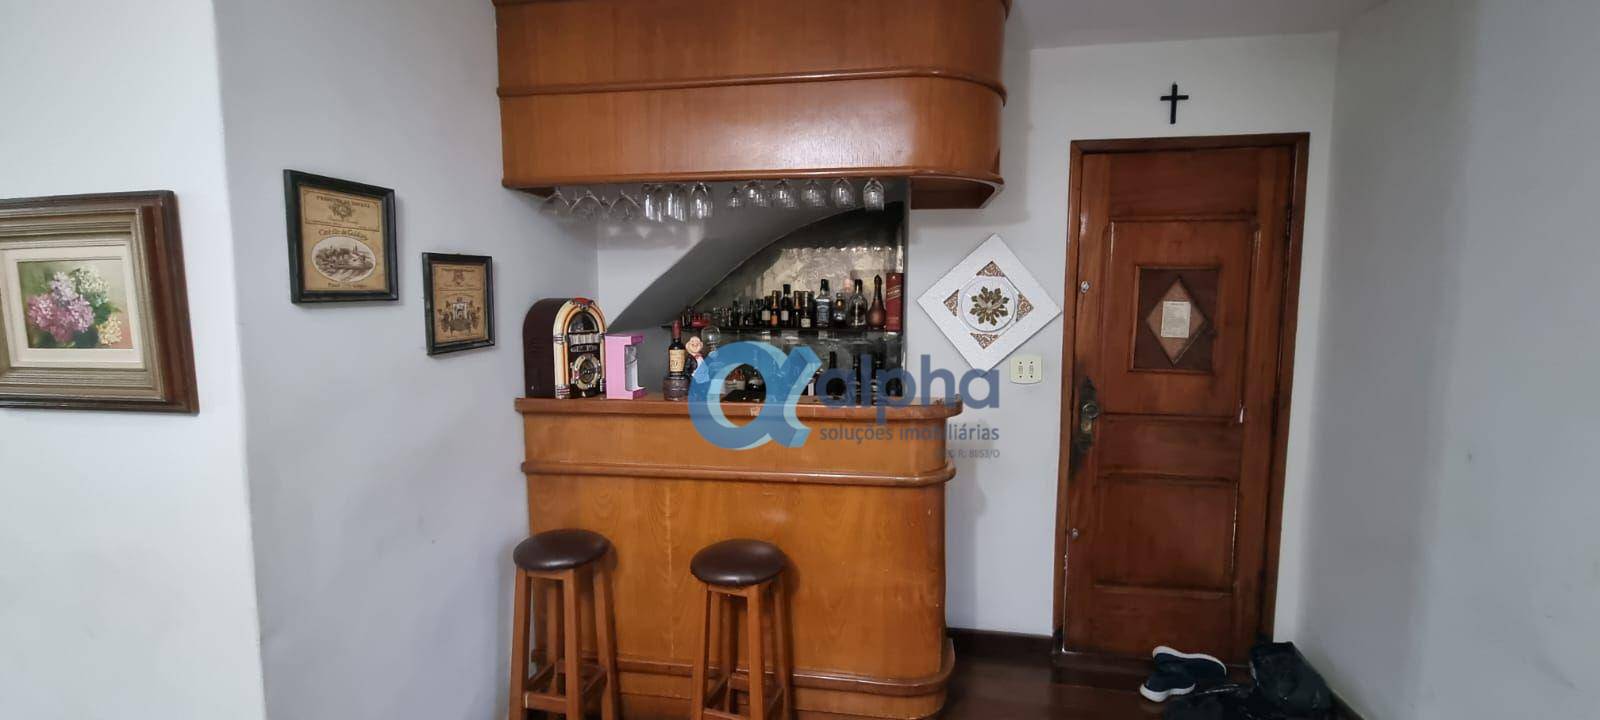 Casa à venda em Tijuca, Rio de Janeiro - RJ - Foto 7